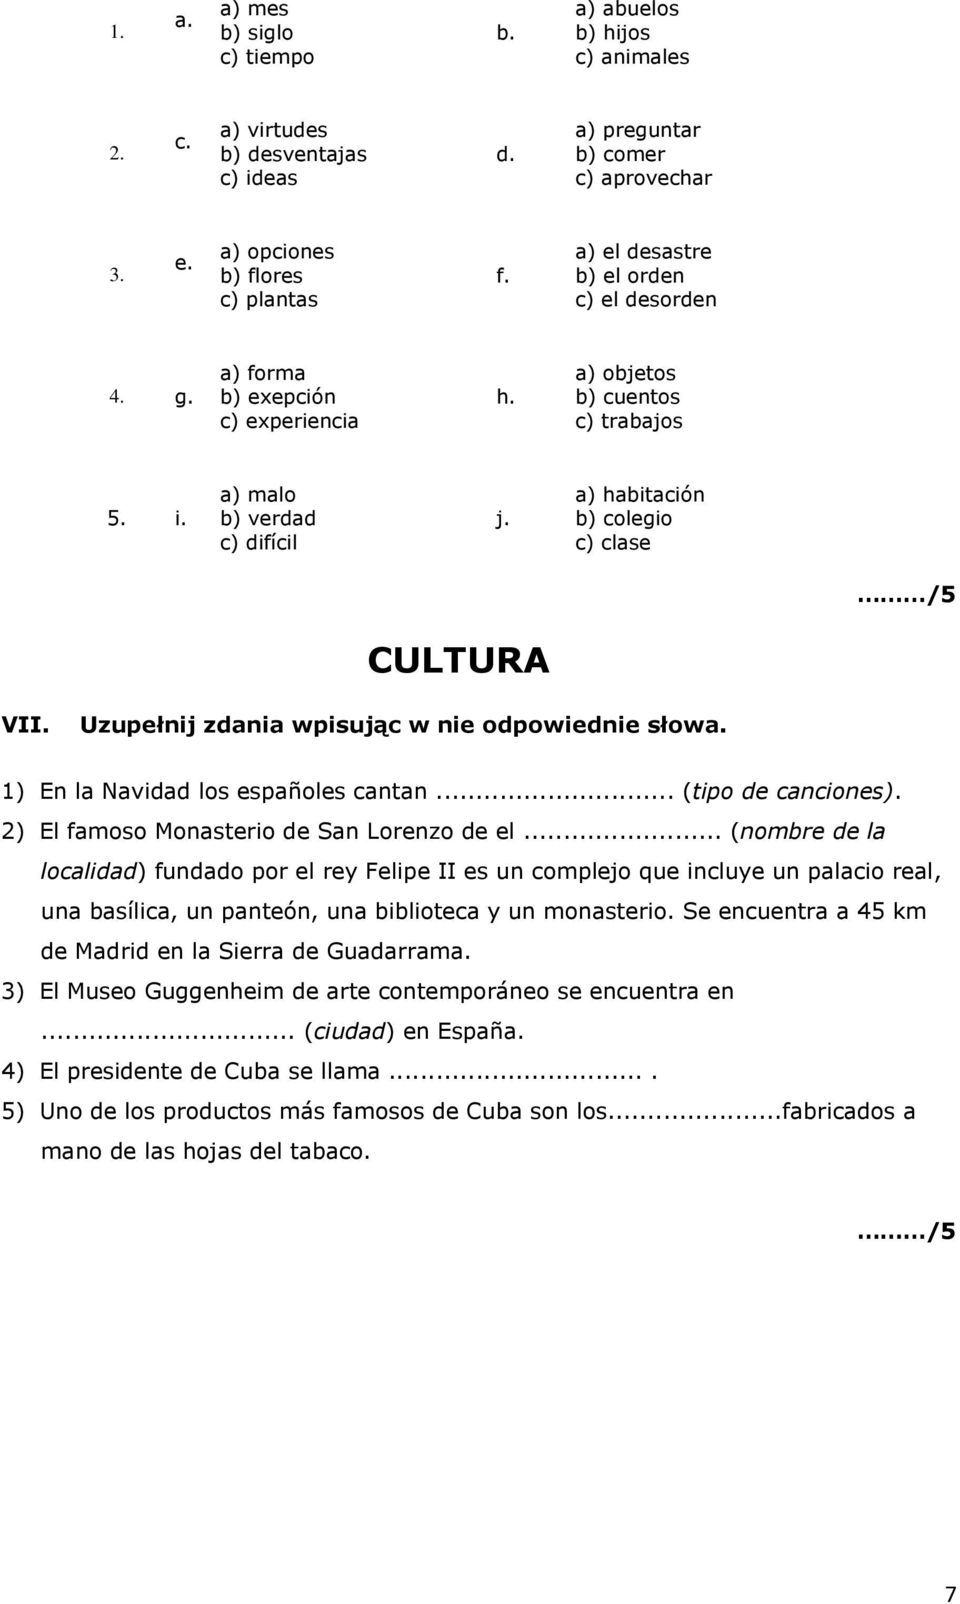 a) habitación b) colegio c) clase CULTURA VII. Uzupełnij zdania wpisując w nie odpowiednie słowa. 1) En la Navidad los españoles cantan... (tipo de canciones).